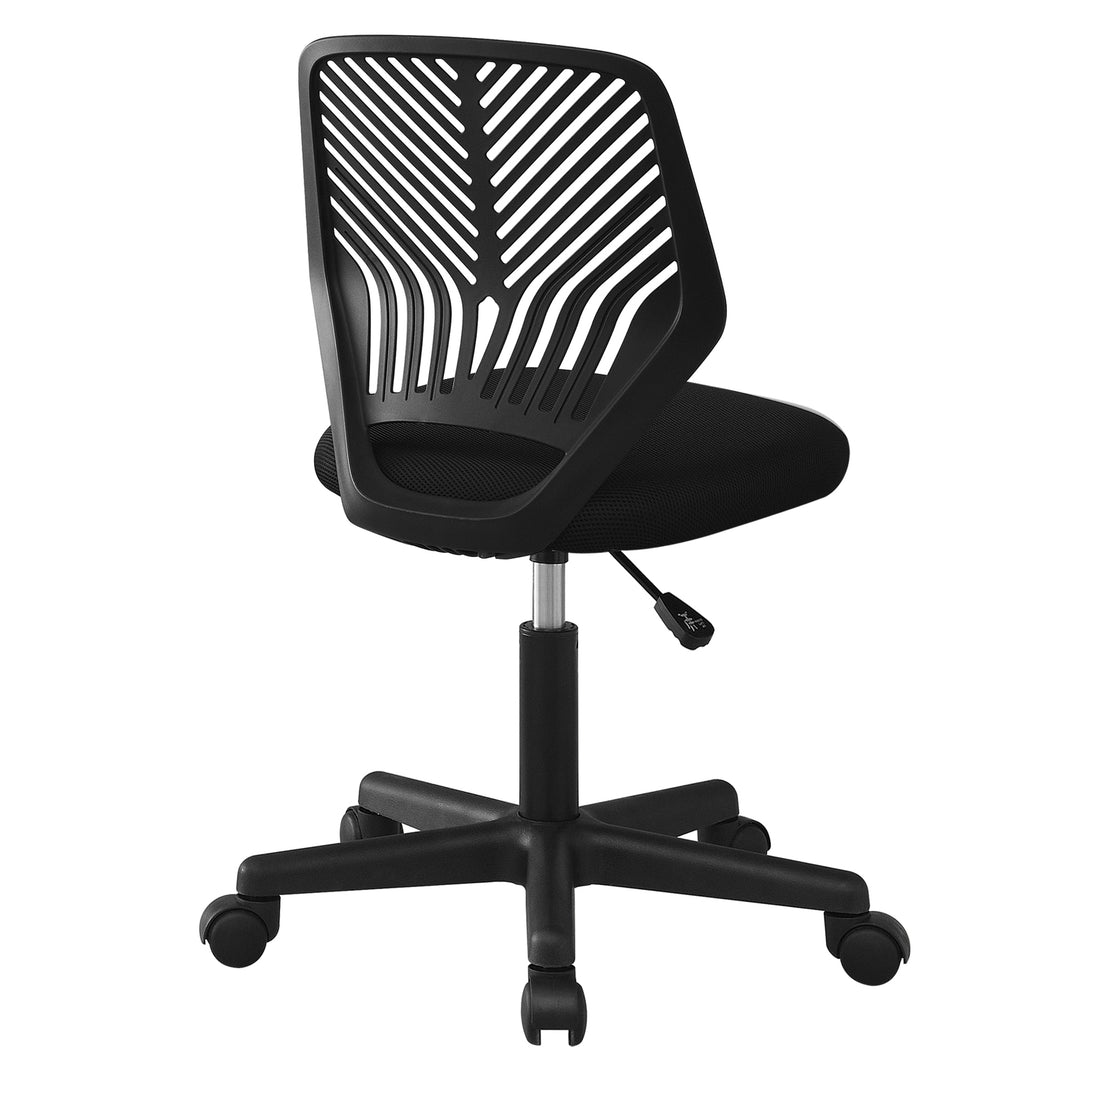 I 7336 Office Chair - Black Juvenile / Black Base On Castors - Furniture Depot (7881133523192)